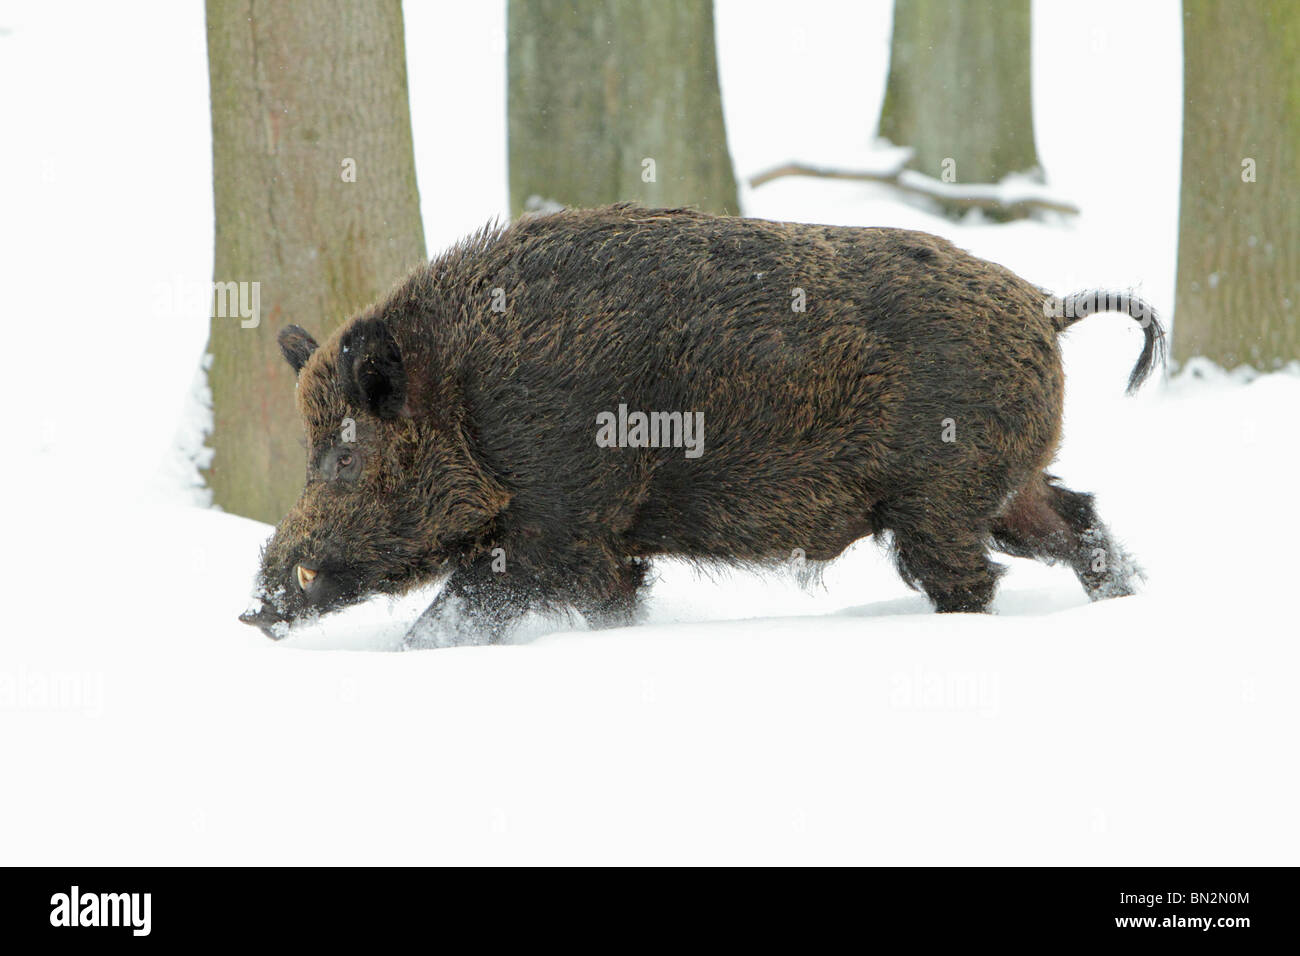 Cochon sauvage européenne, (Sus scrofa) mâle d'un animal ou d'un sanglier, courant à travers la forêt couverte de neige, Allemagne Banque D'Images